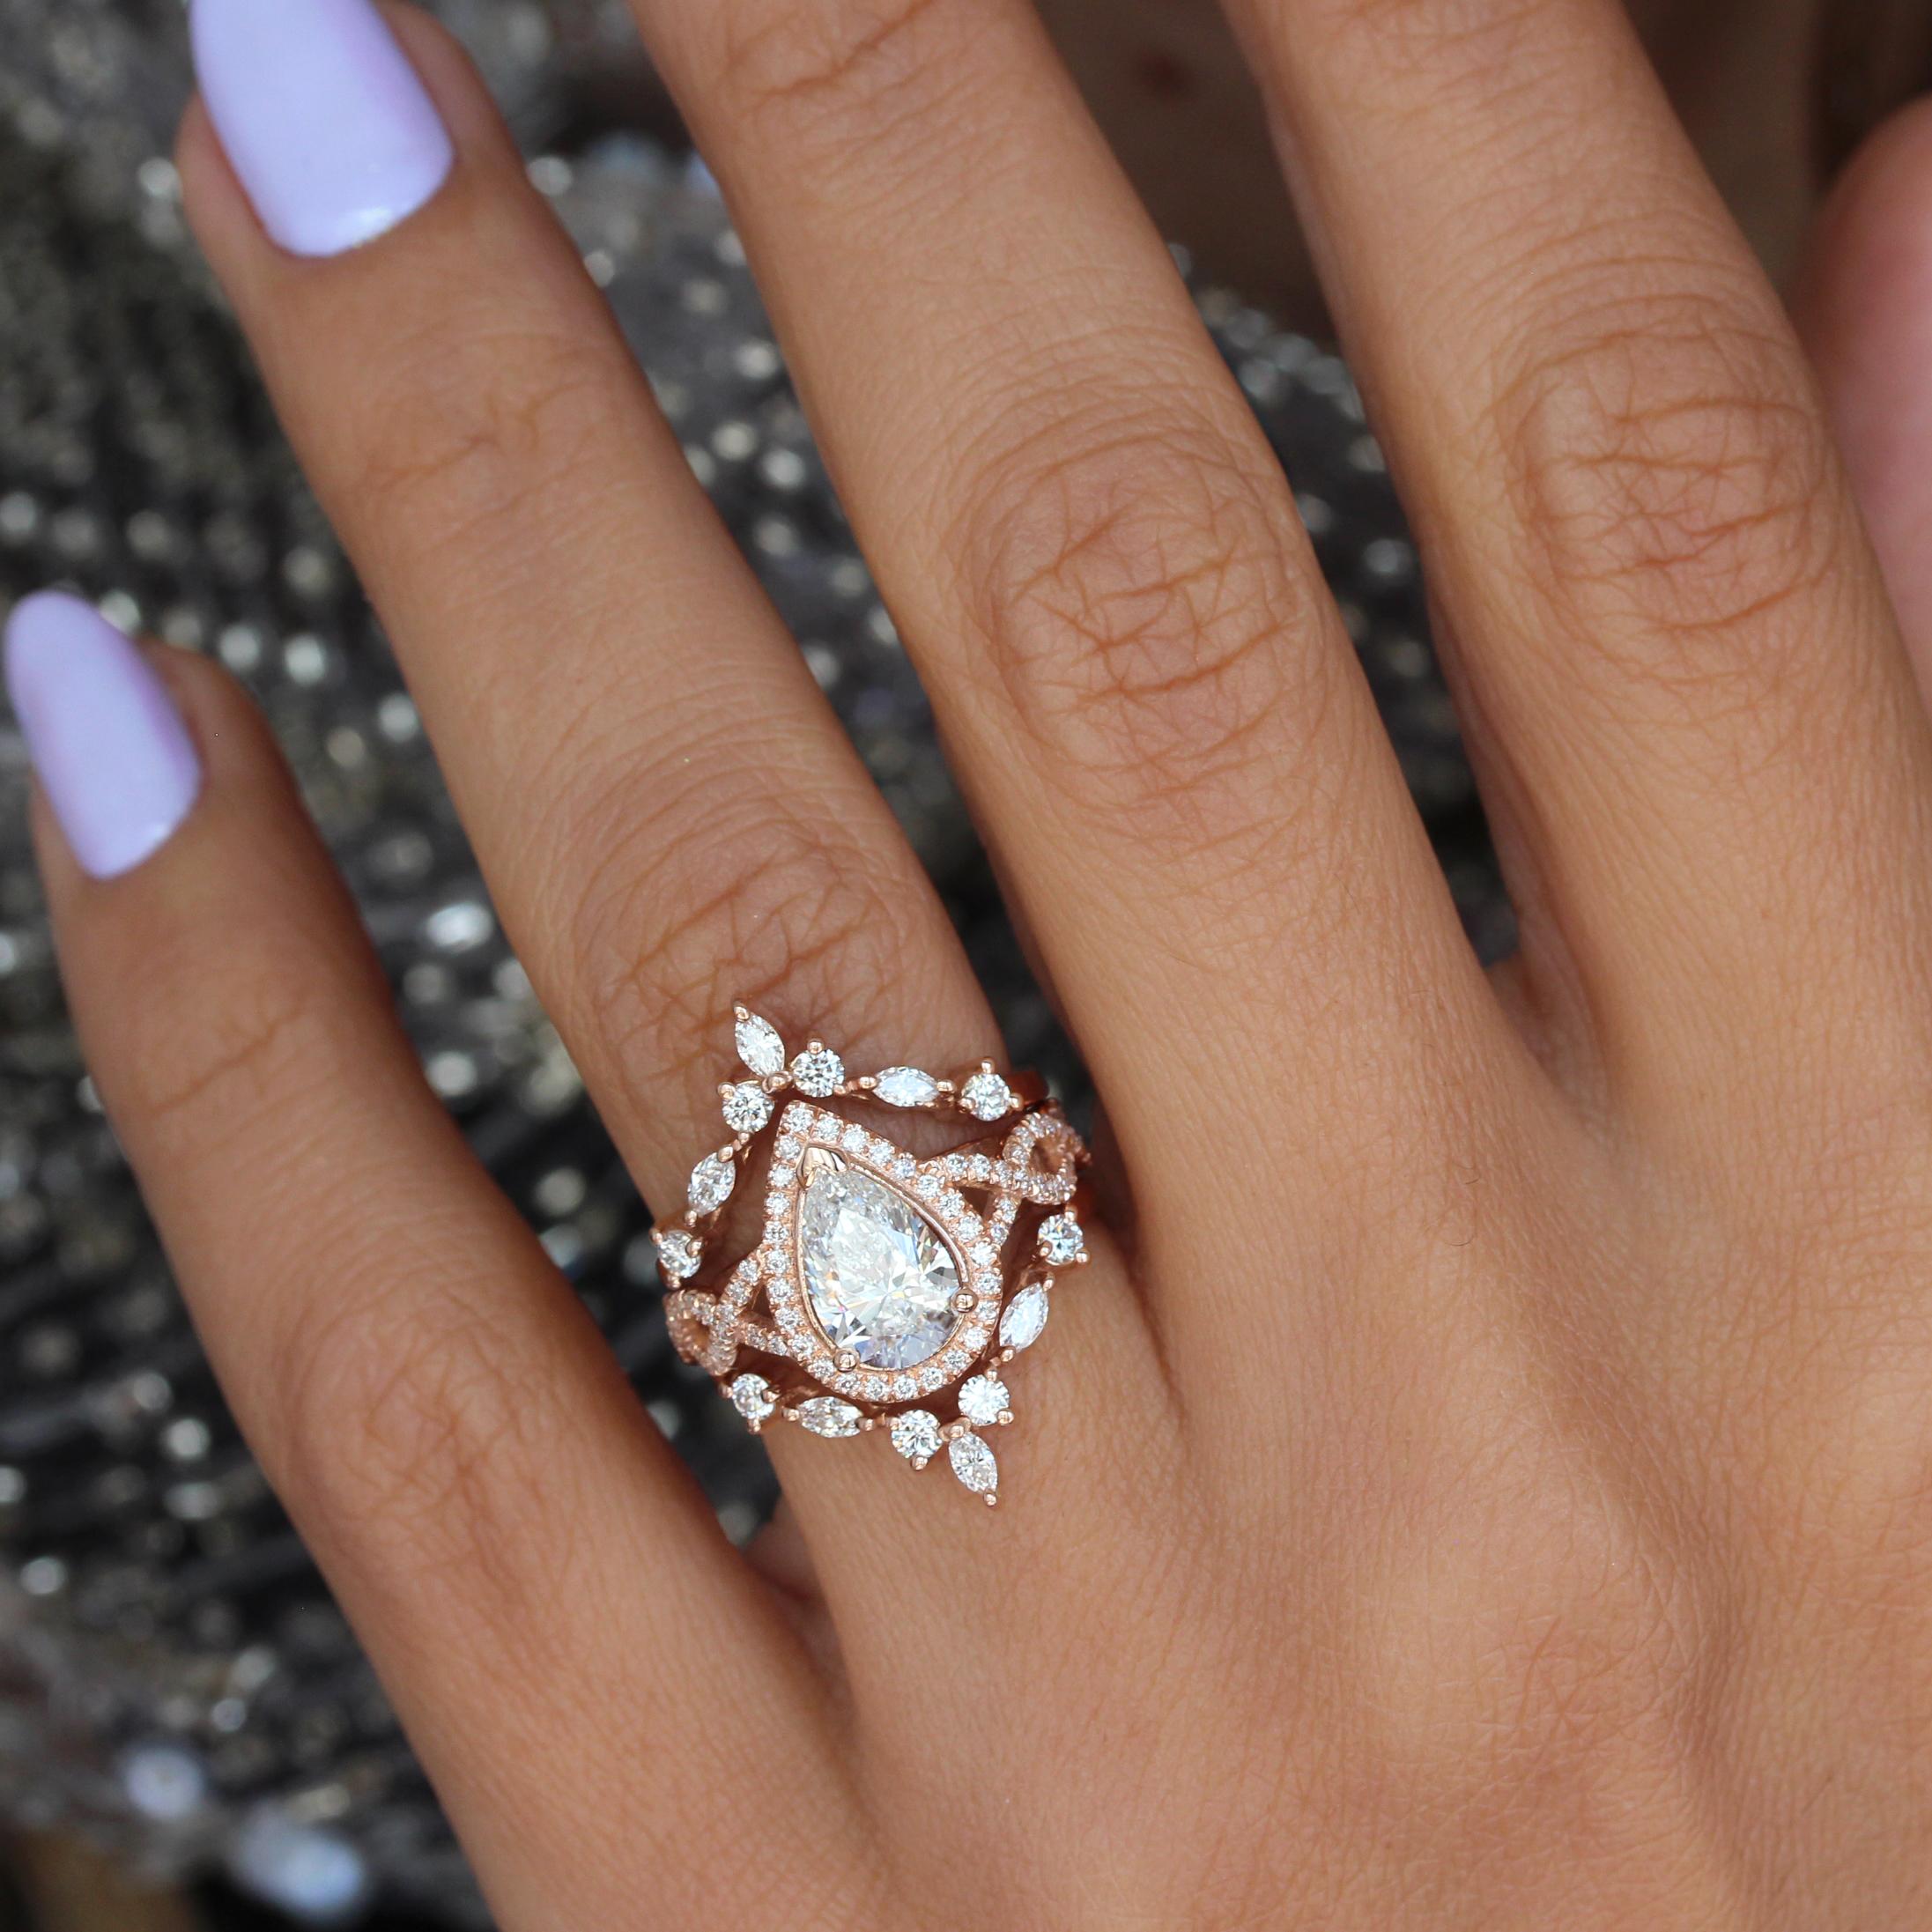 Dieser bezaubernde Verlobungsring hat einen atemberaubenden birnenförmigen 1,5-Karat-Diamant in der Mitte und einen wunderschönen Diamant-Halo. Das mit funkelnden Diamanten und einem Unendlichkeitsmotiv aufwändig gestaltete Twist Shank-Band verleiht